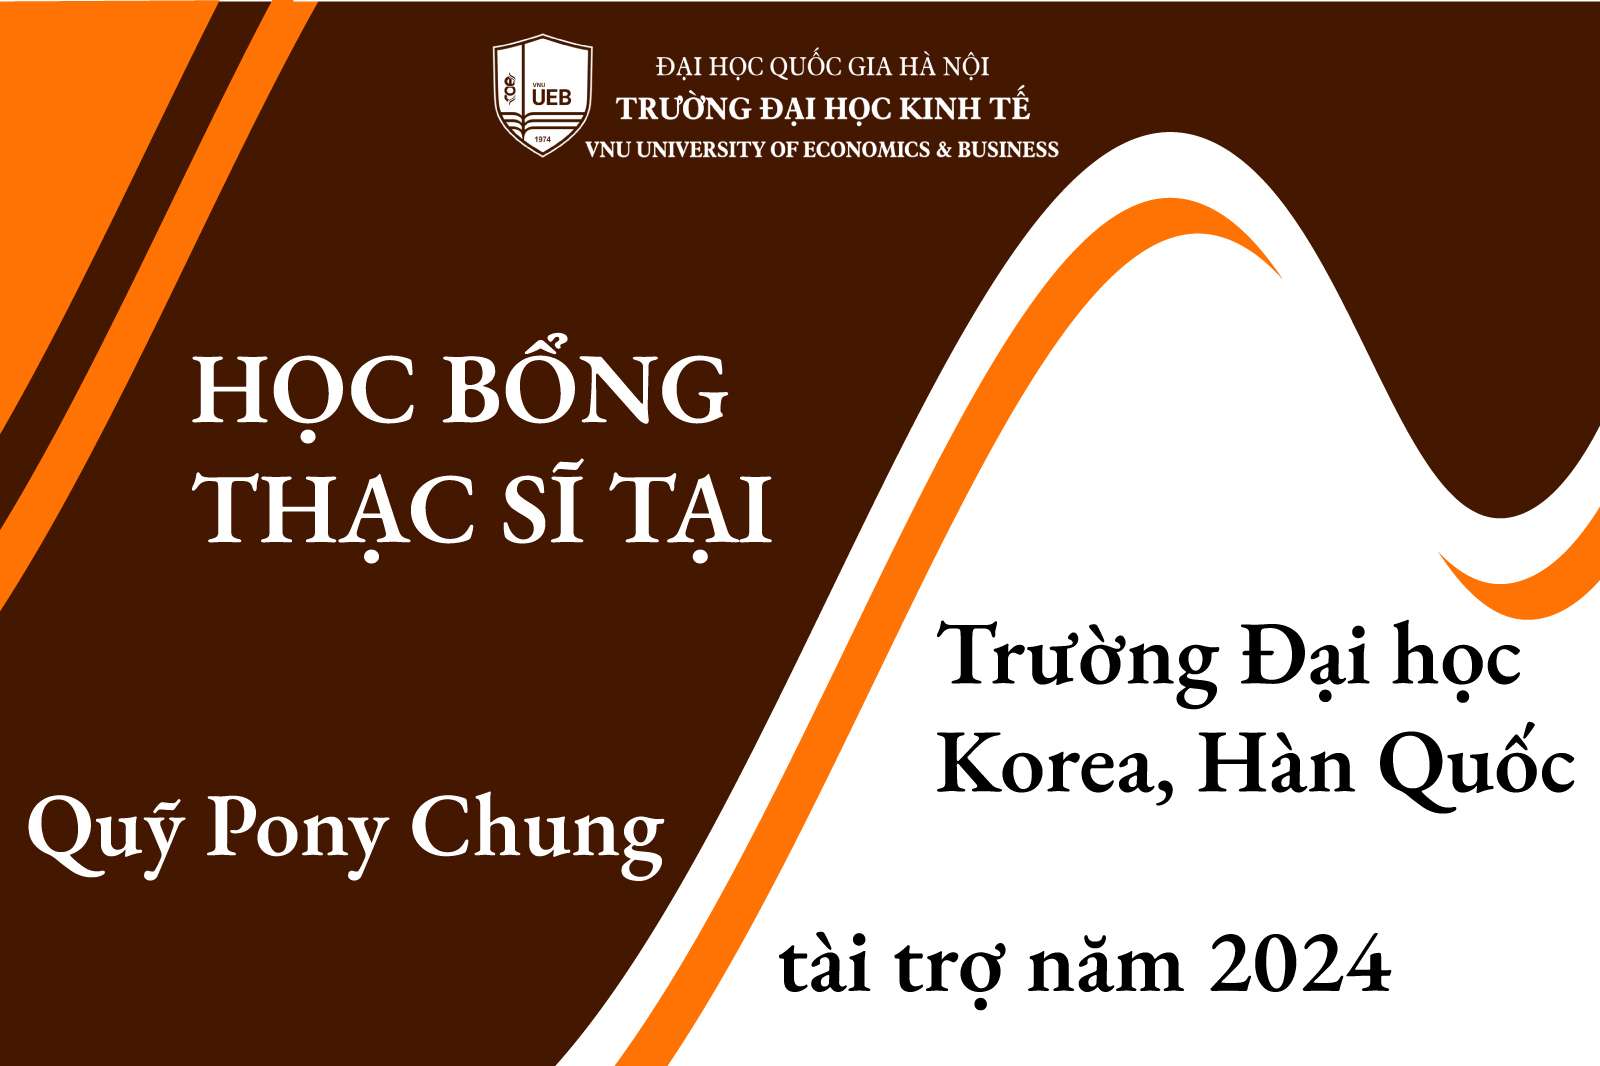 Học bổng thạc sĩ tại Trường Đại học Korea, Hàn Quốc do Quỹ Pony Chung tài trợ năm 2024